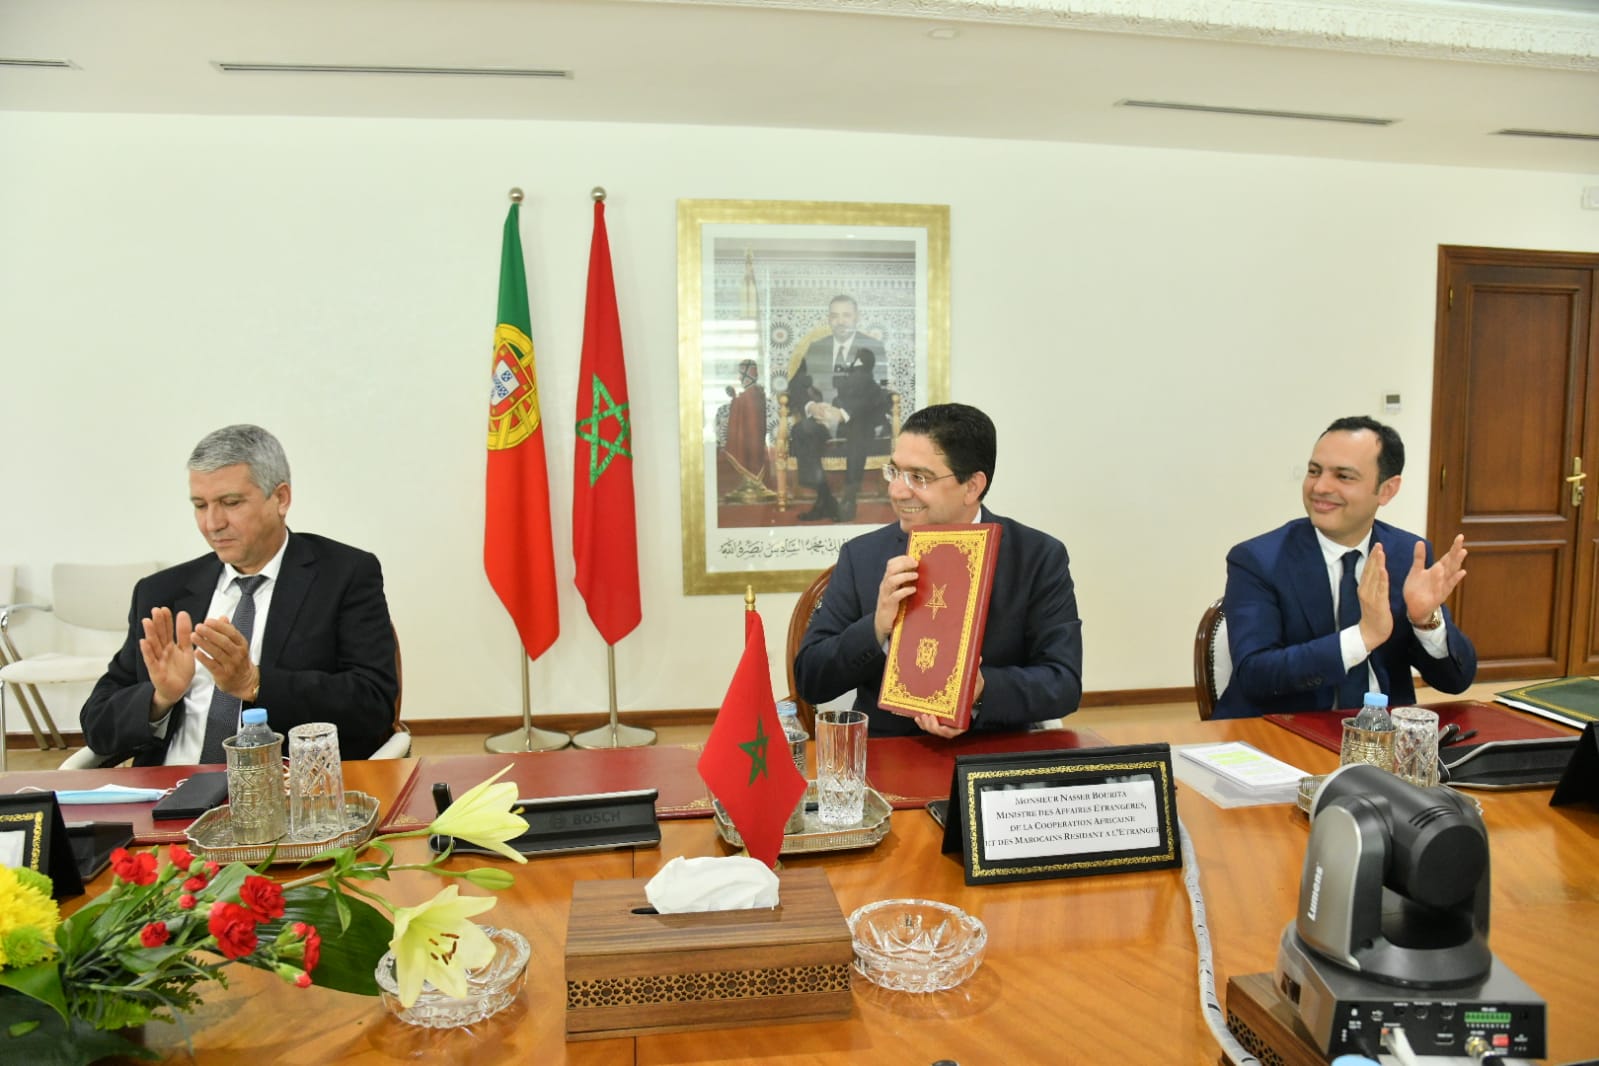 Le Maroc et le Portugal signent un accord sur le recrutement des travailleurs marocains